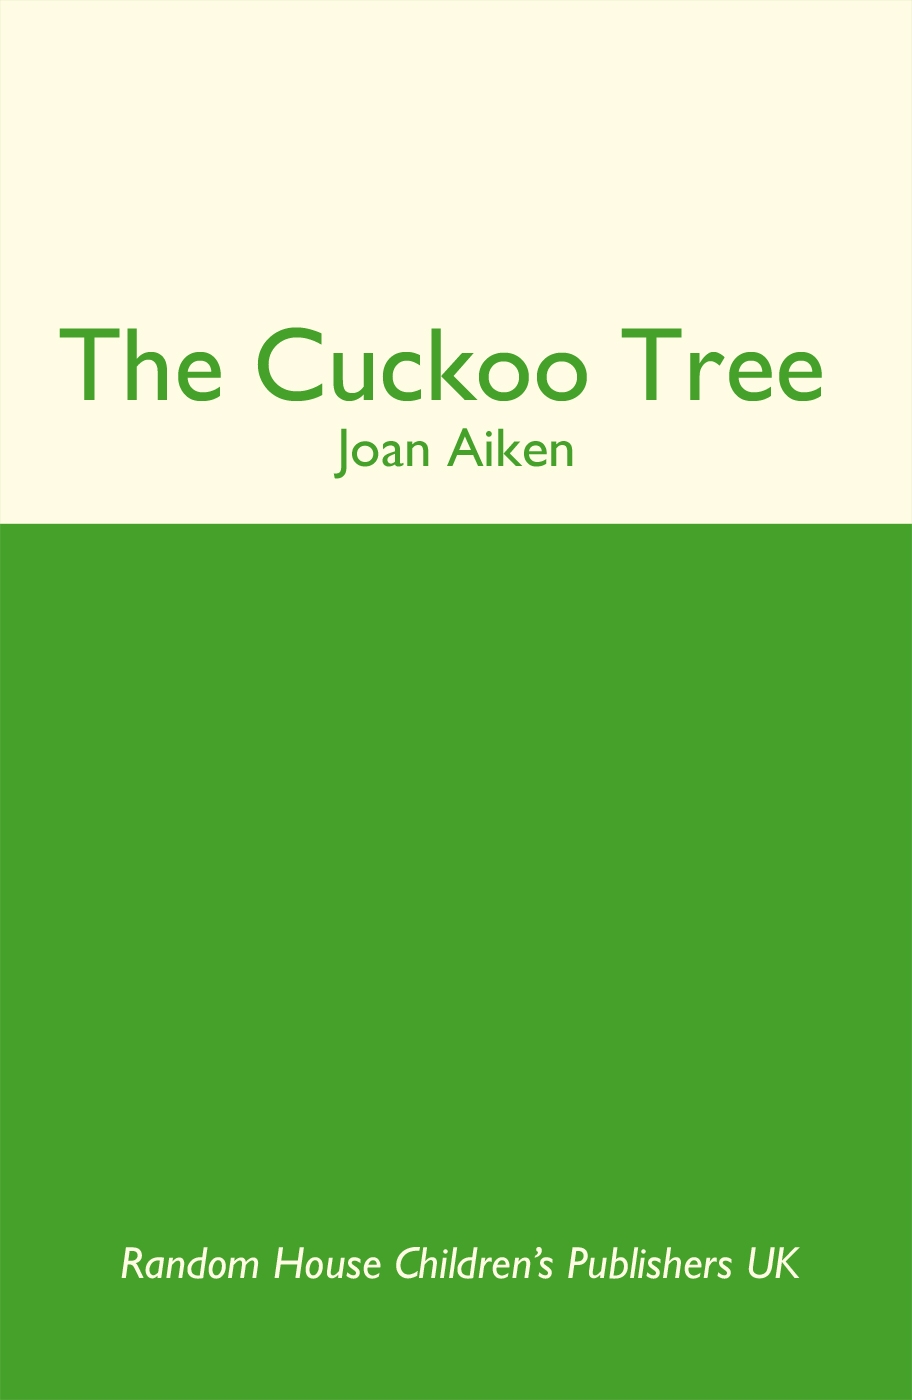 The Cuckoo Tree